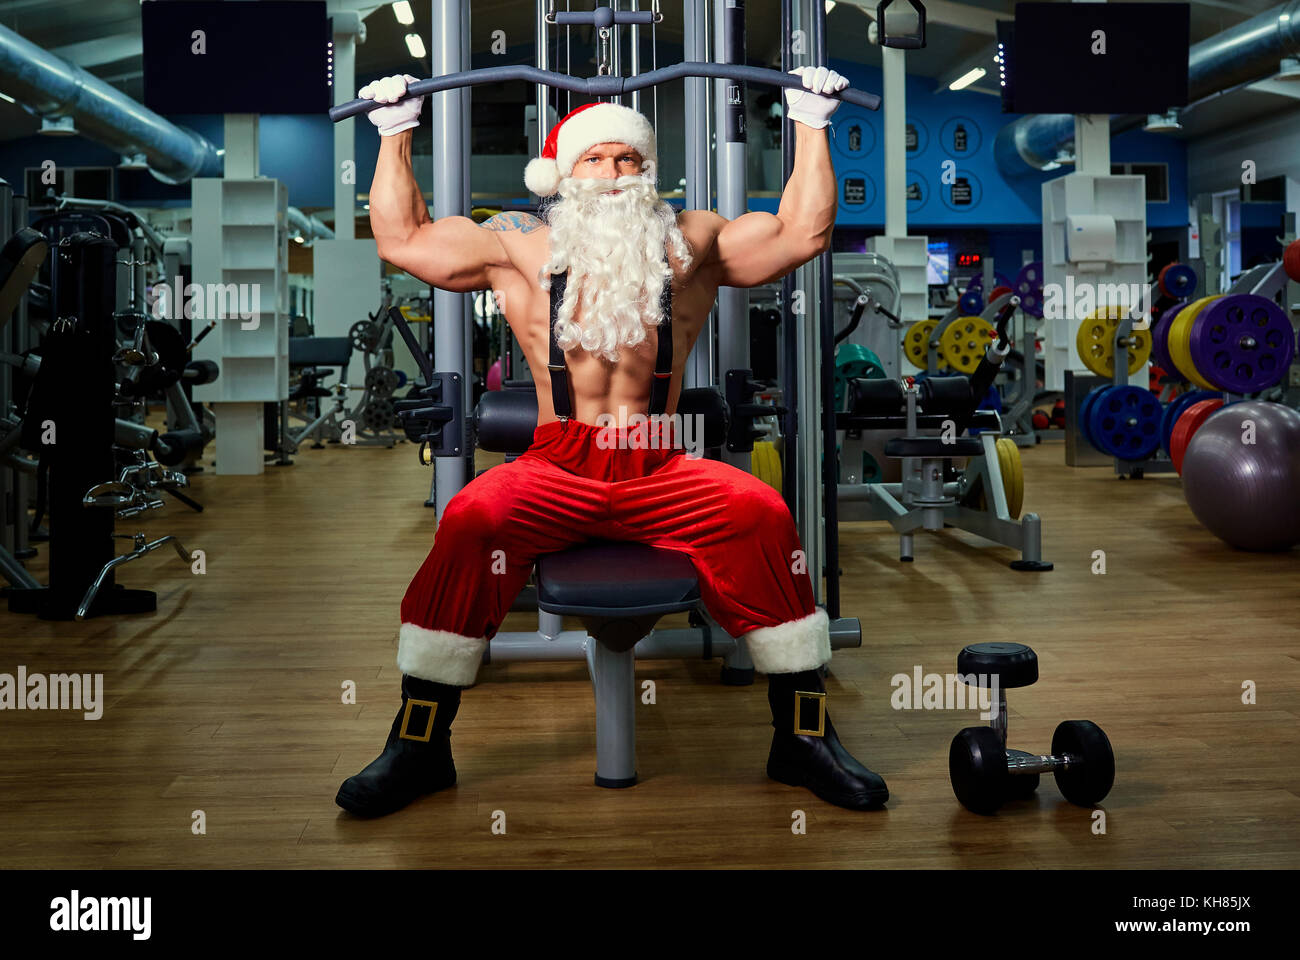 Santa claus Bodybuilder Training im Fitnessstudio zu Weihnachten  Stockfotografie - Alamy